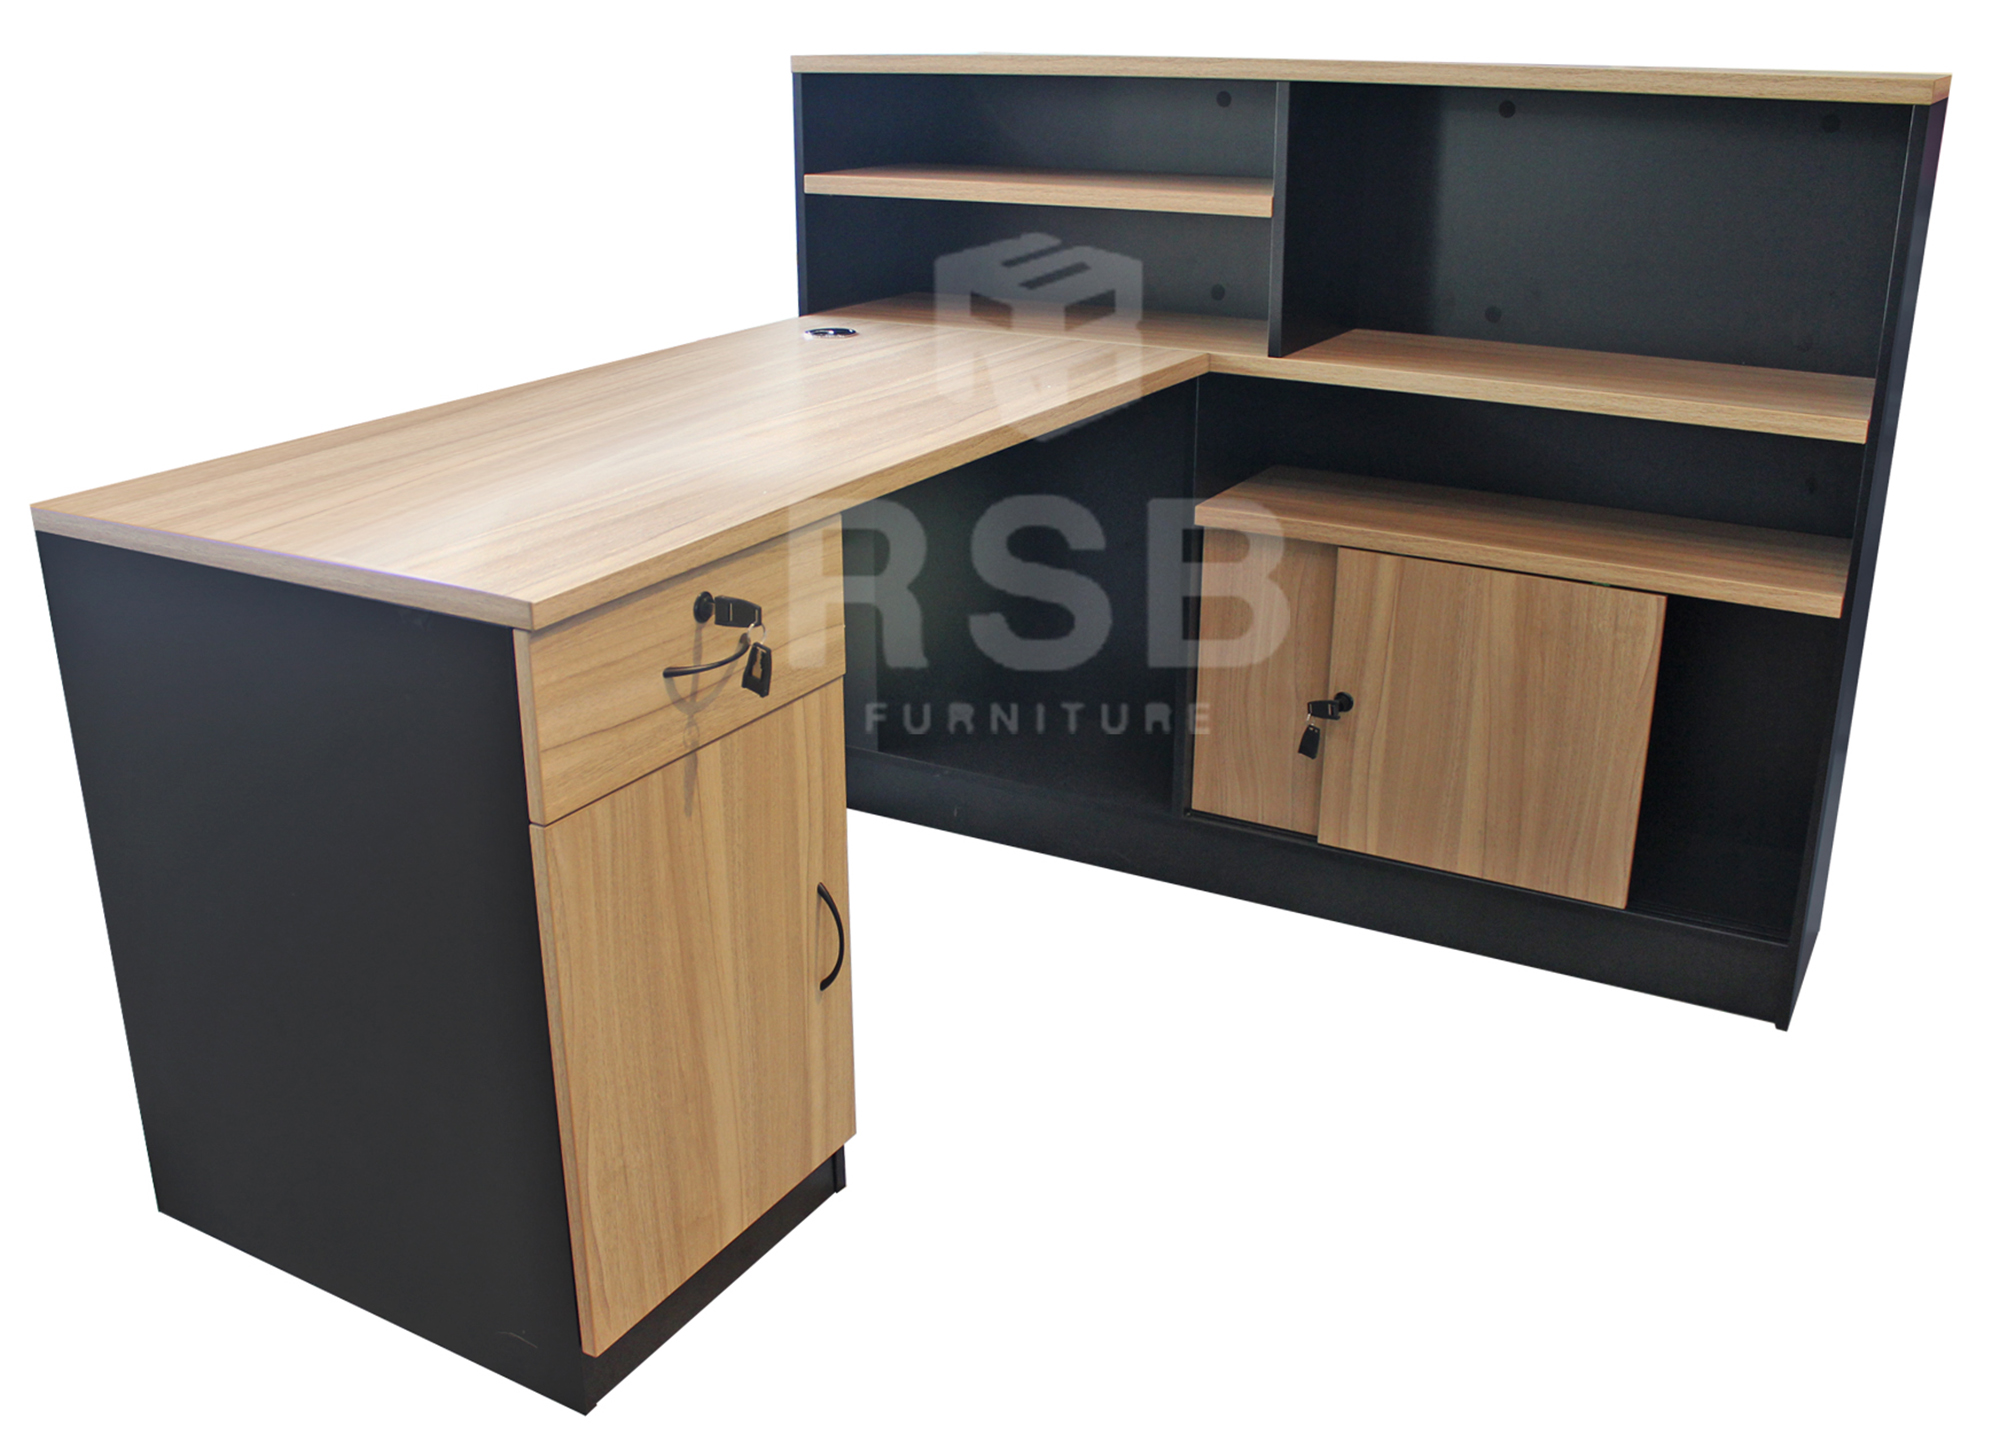 โต๊ะทำงานเข้ามุม+ตู้ไซด์บอร์ดสูงข้าง ขนาด W 150 x D140 x H109 cm รุ่นขายดี รหัส 2937